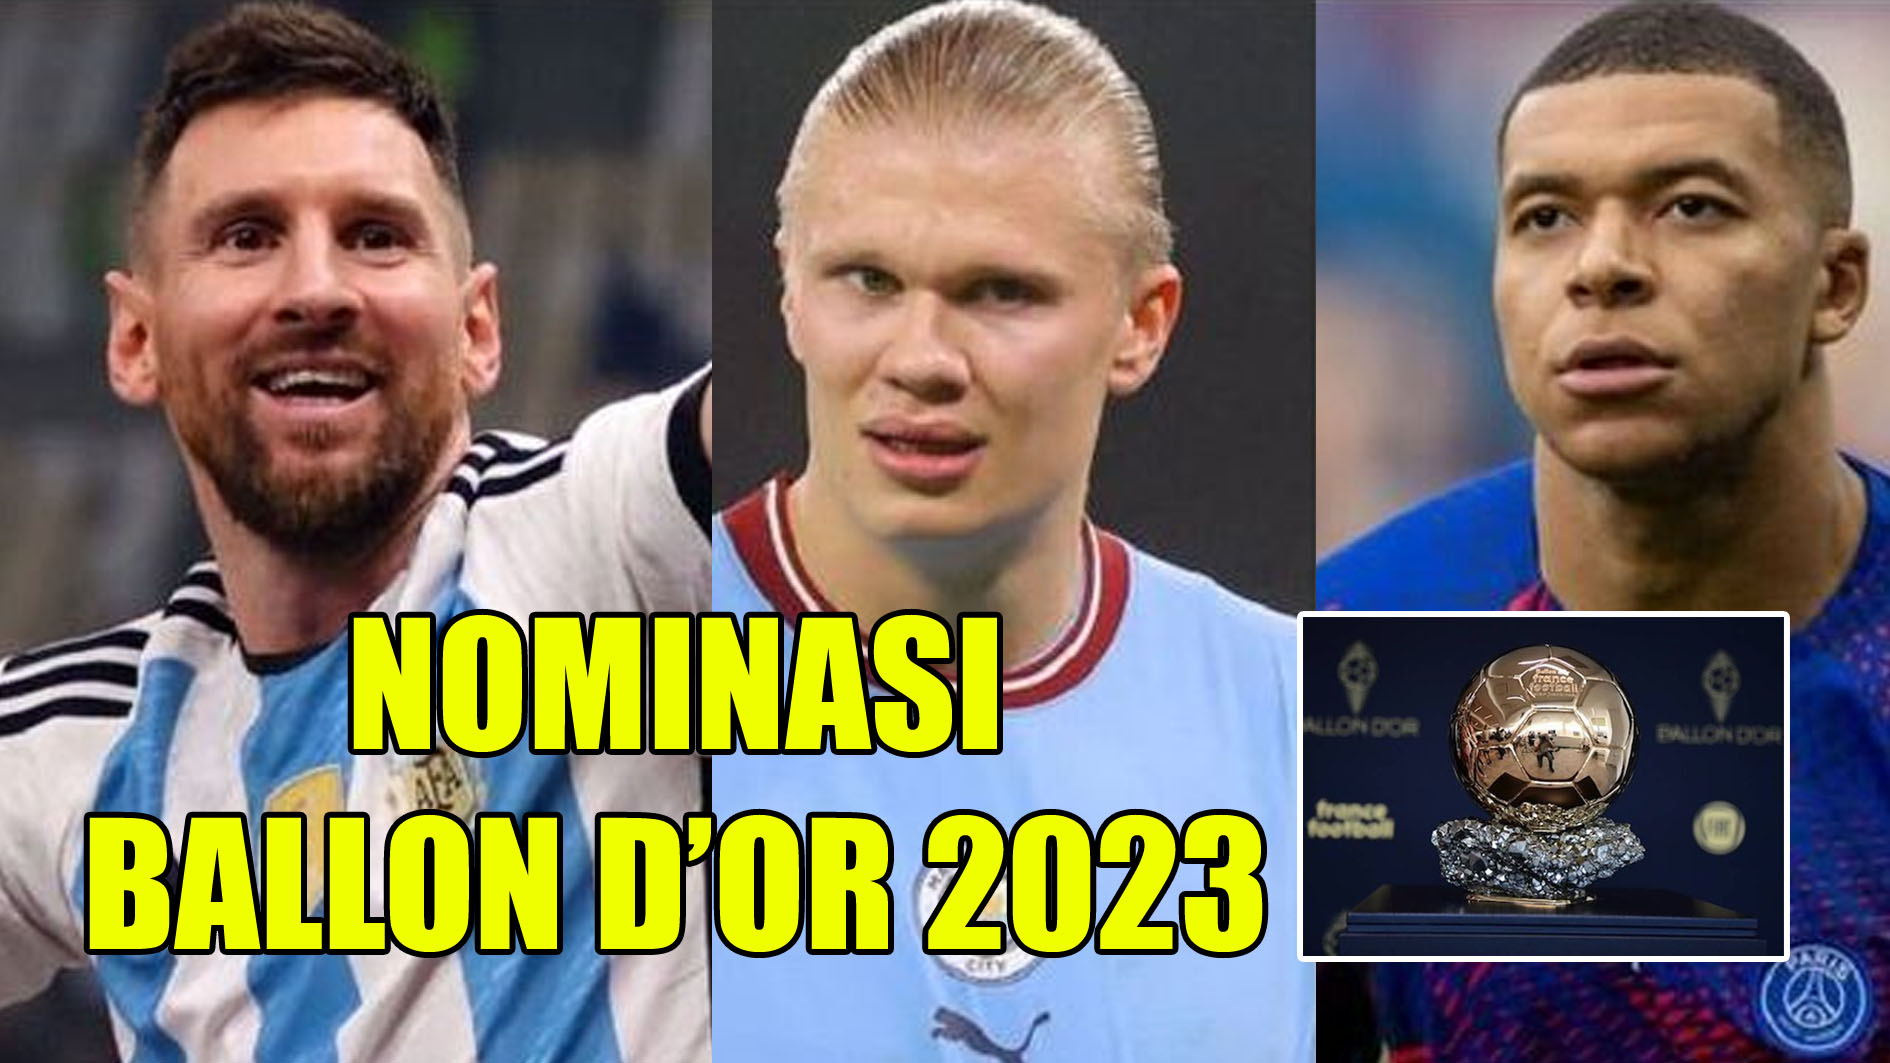 Nominasi Ballon d’Or 2023: Lionel Messi, Erling Haaland dan Kylian Mbappe Bersaing, Tak Ada Cristiano Ronaldo